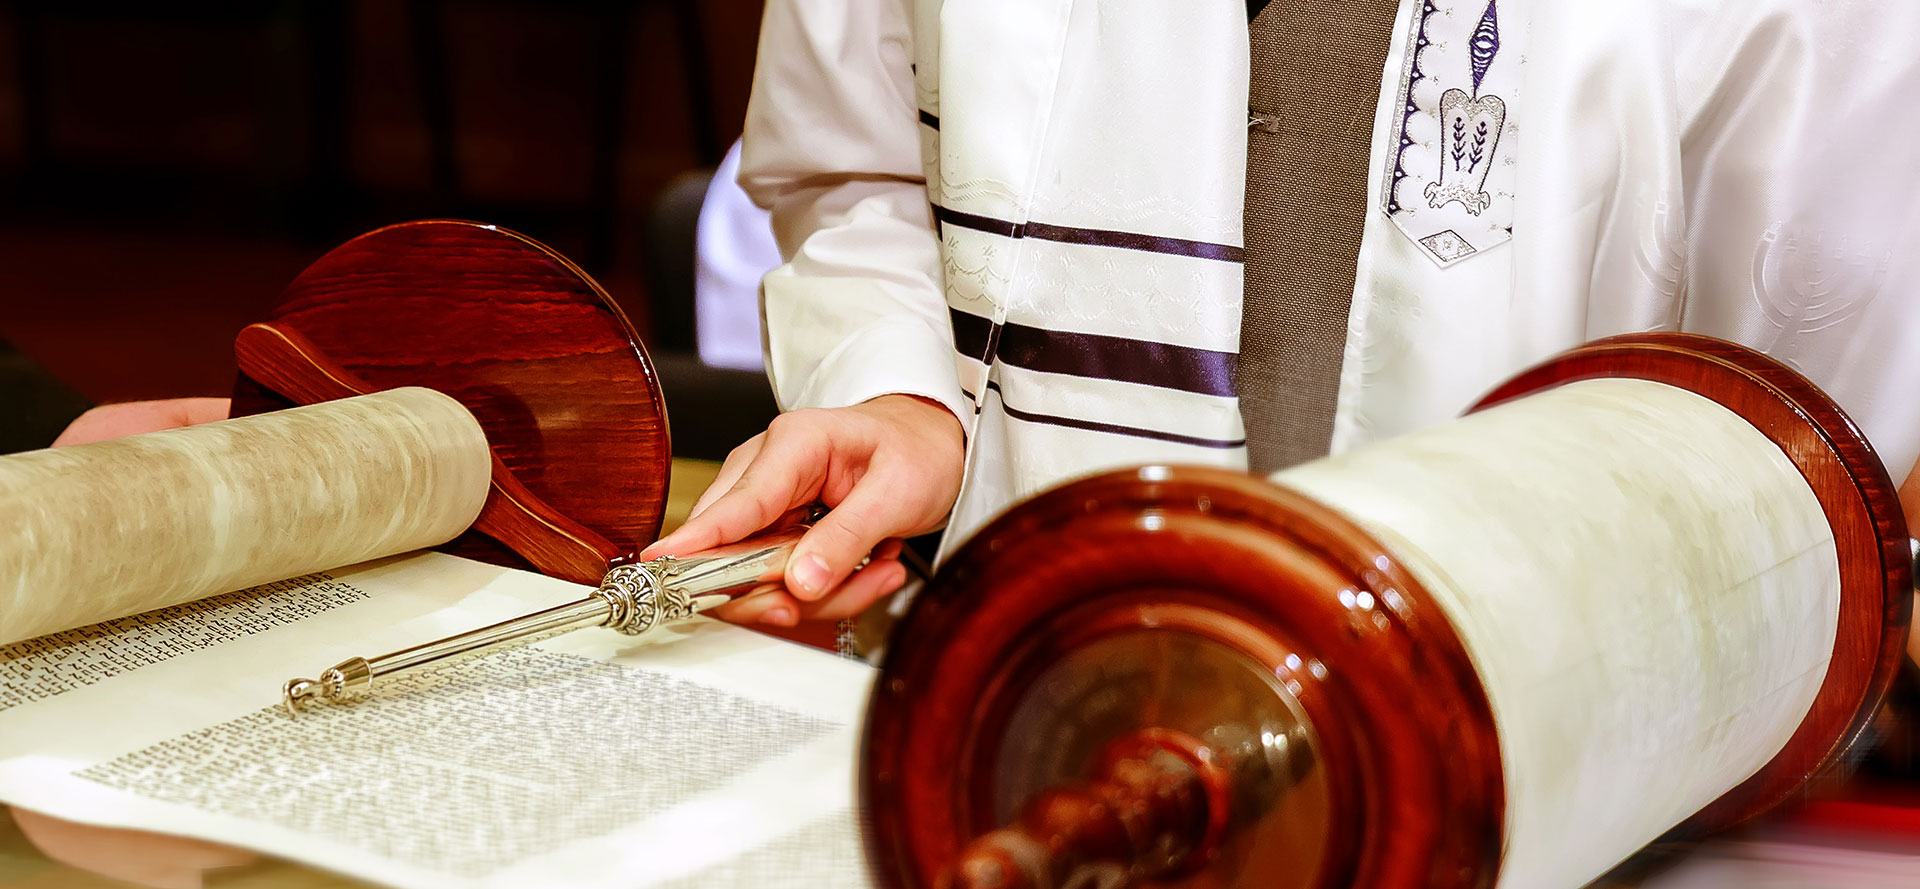 Yom Kippur prayers